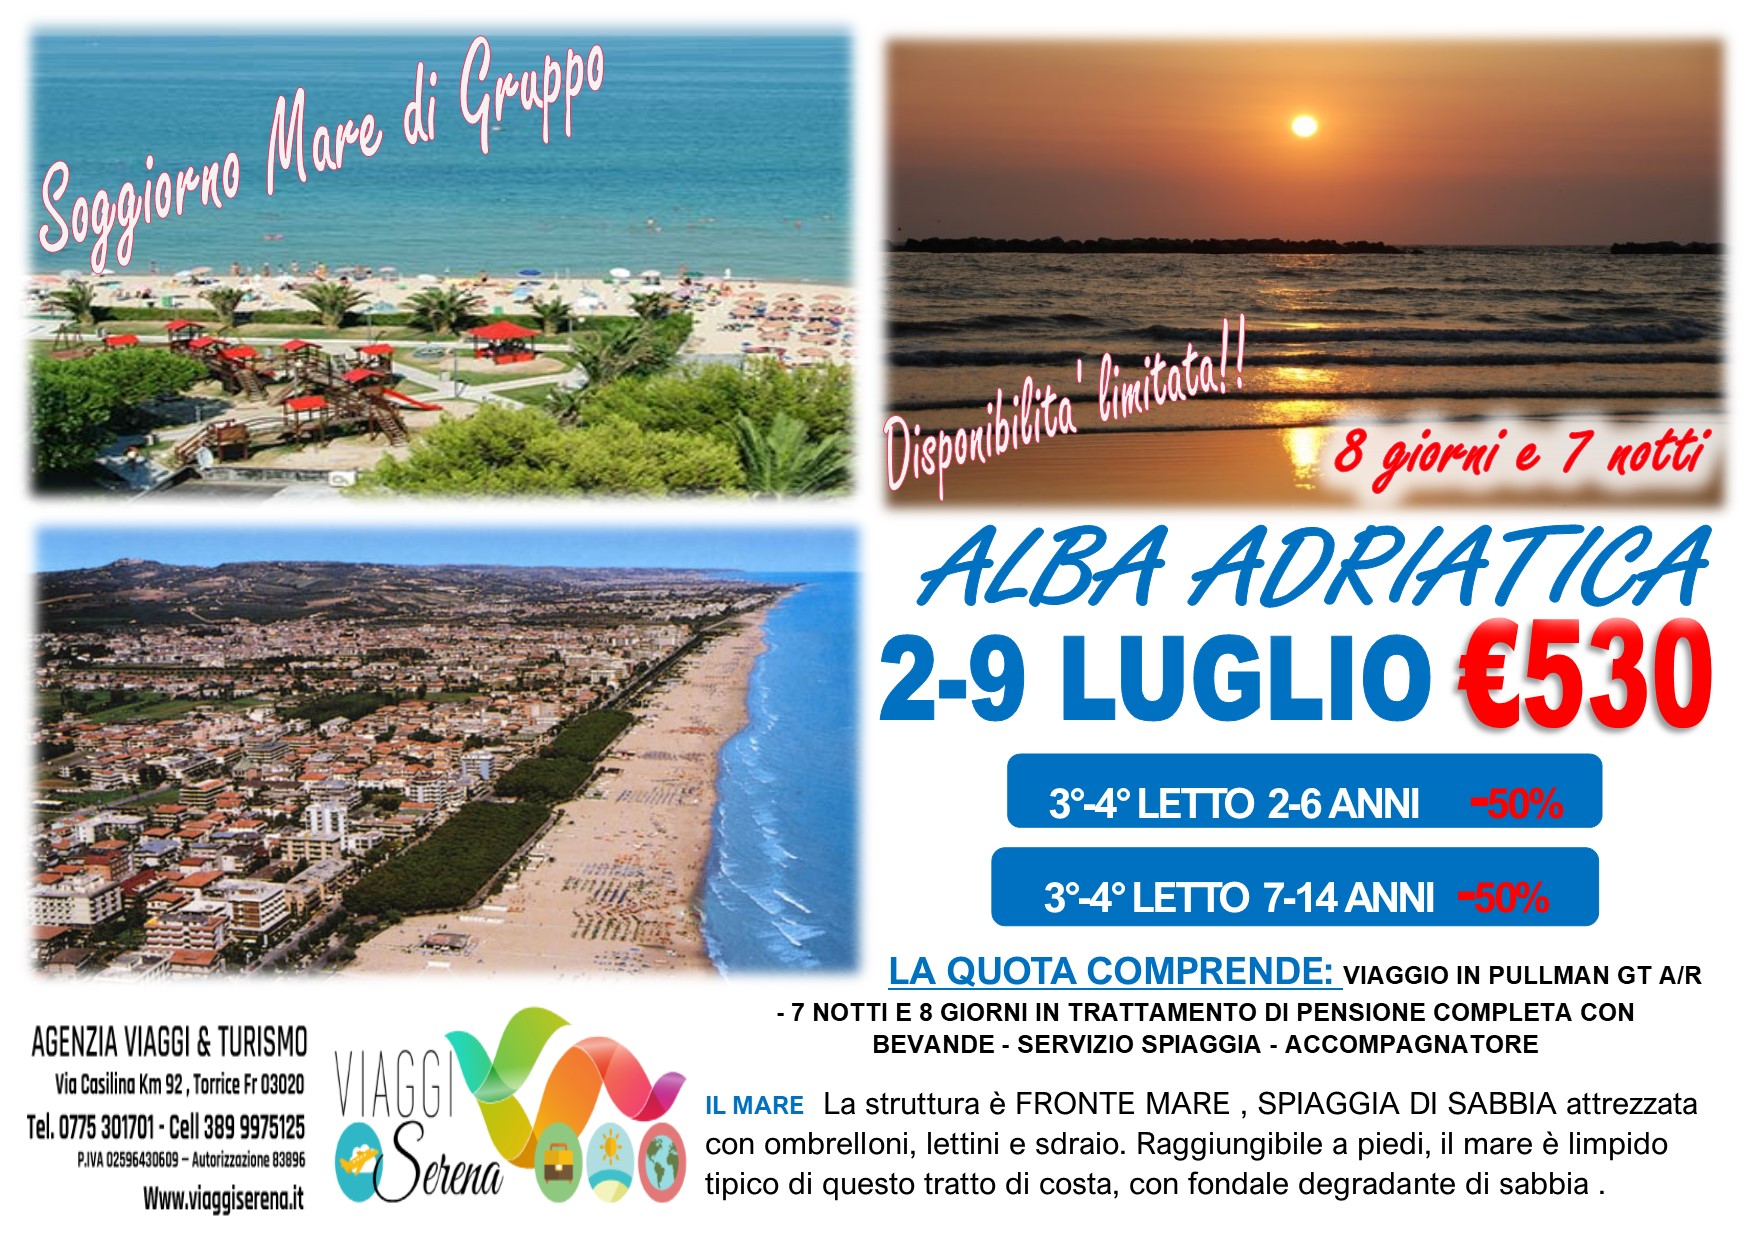 Viaggi di Gruppo: Alba Adriatica soggiorno mare 2-9 Luglio €530,00